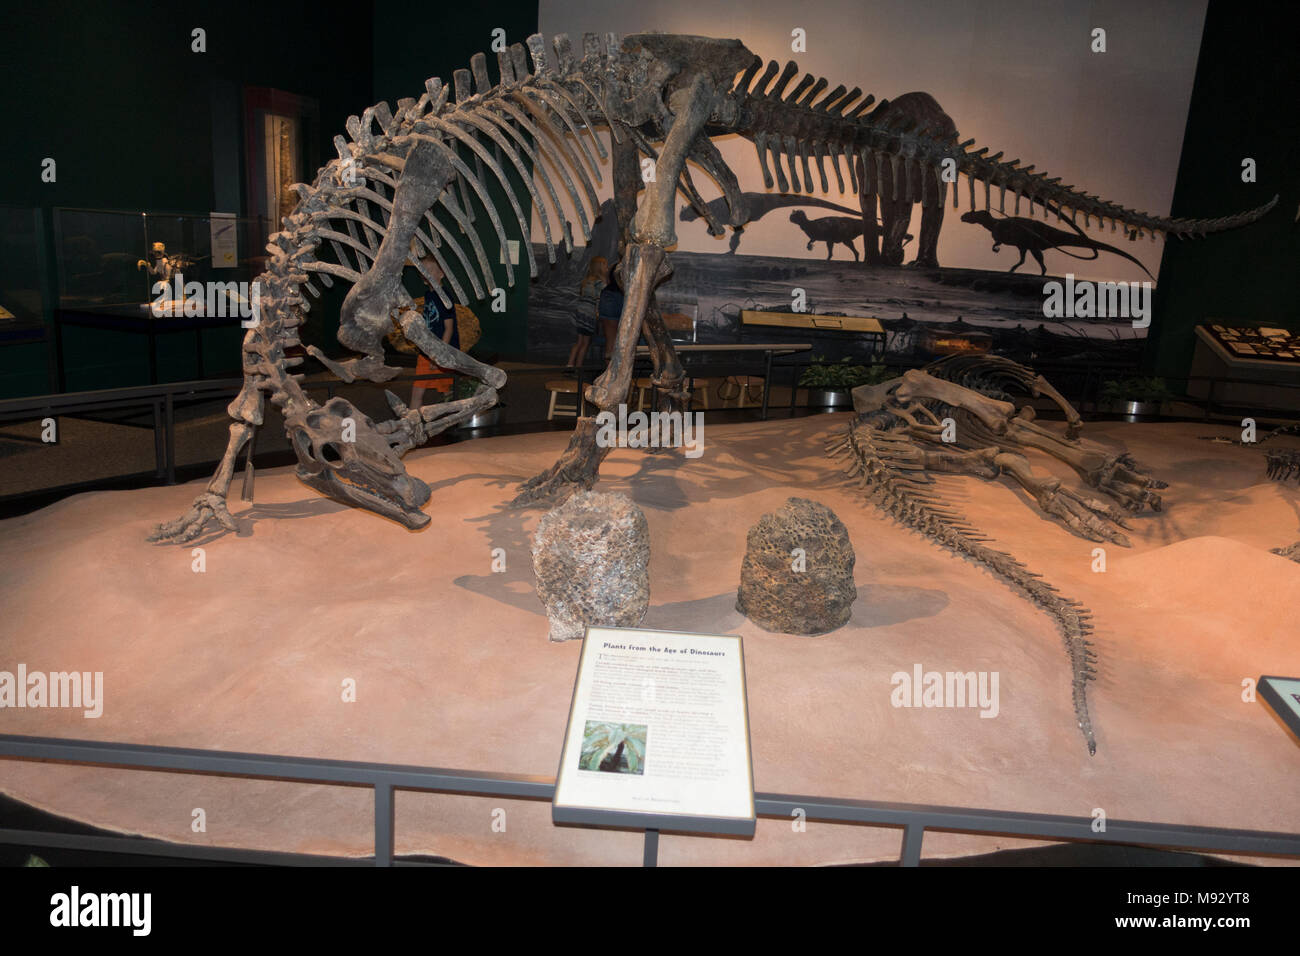 Camptosaurus un impianto-mangiare, fatturati ornithischian dinosaur del tardo Giurassico, il Museo della Scienza del Minnesota presentano. St Paul Minnesota MN USA Foto Stock